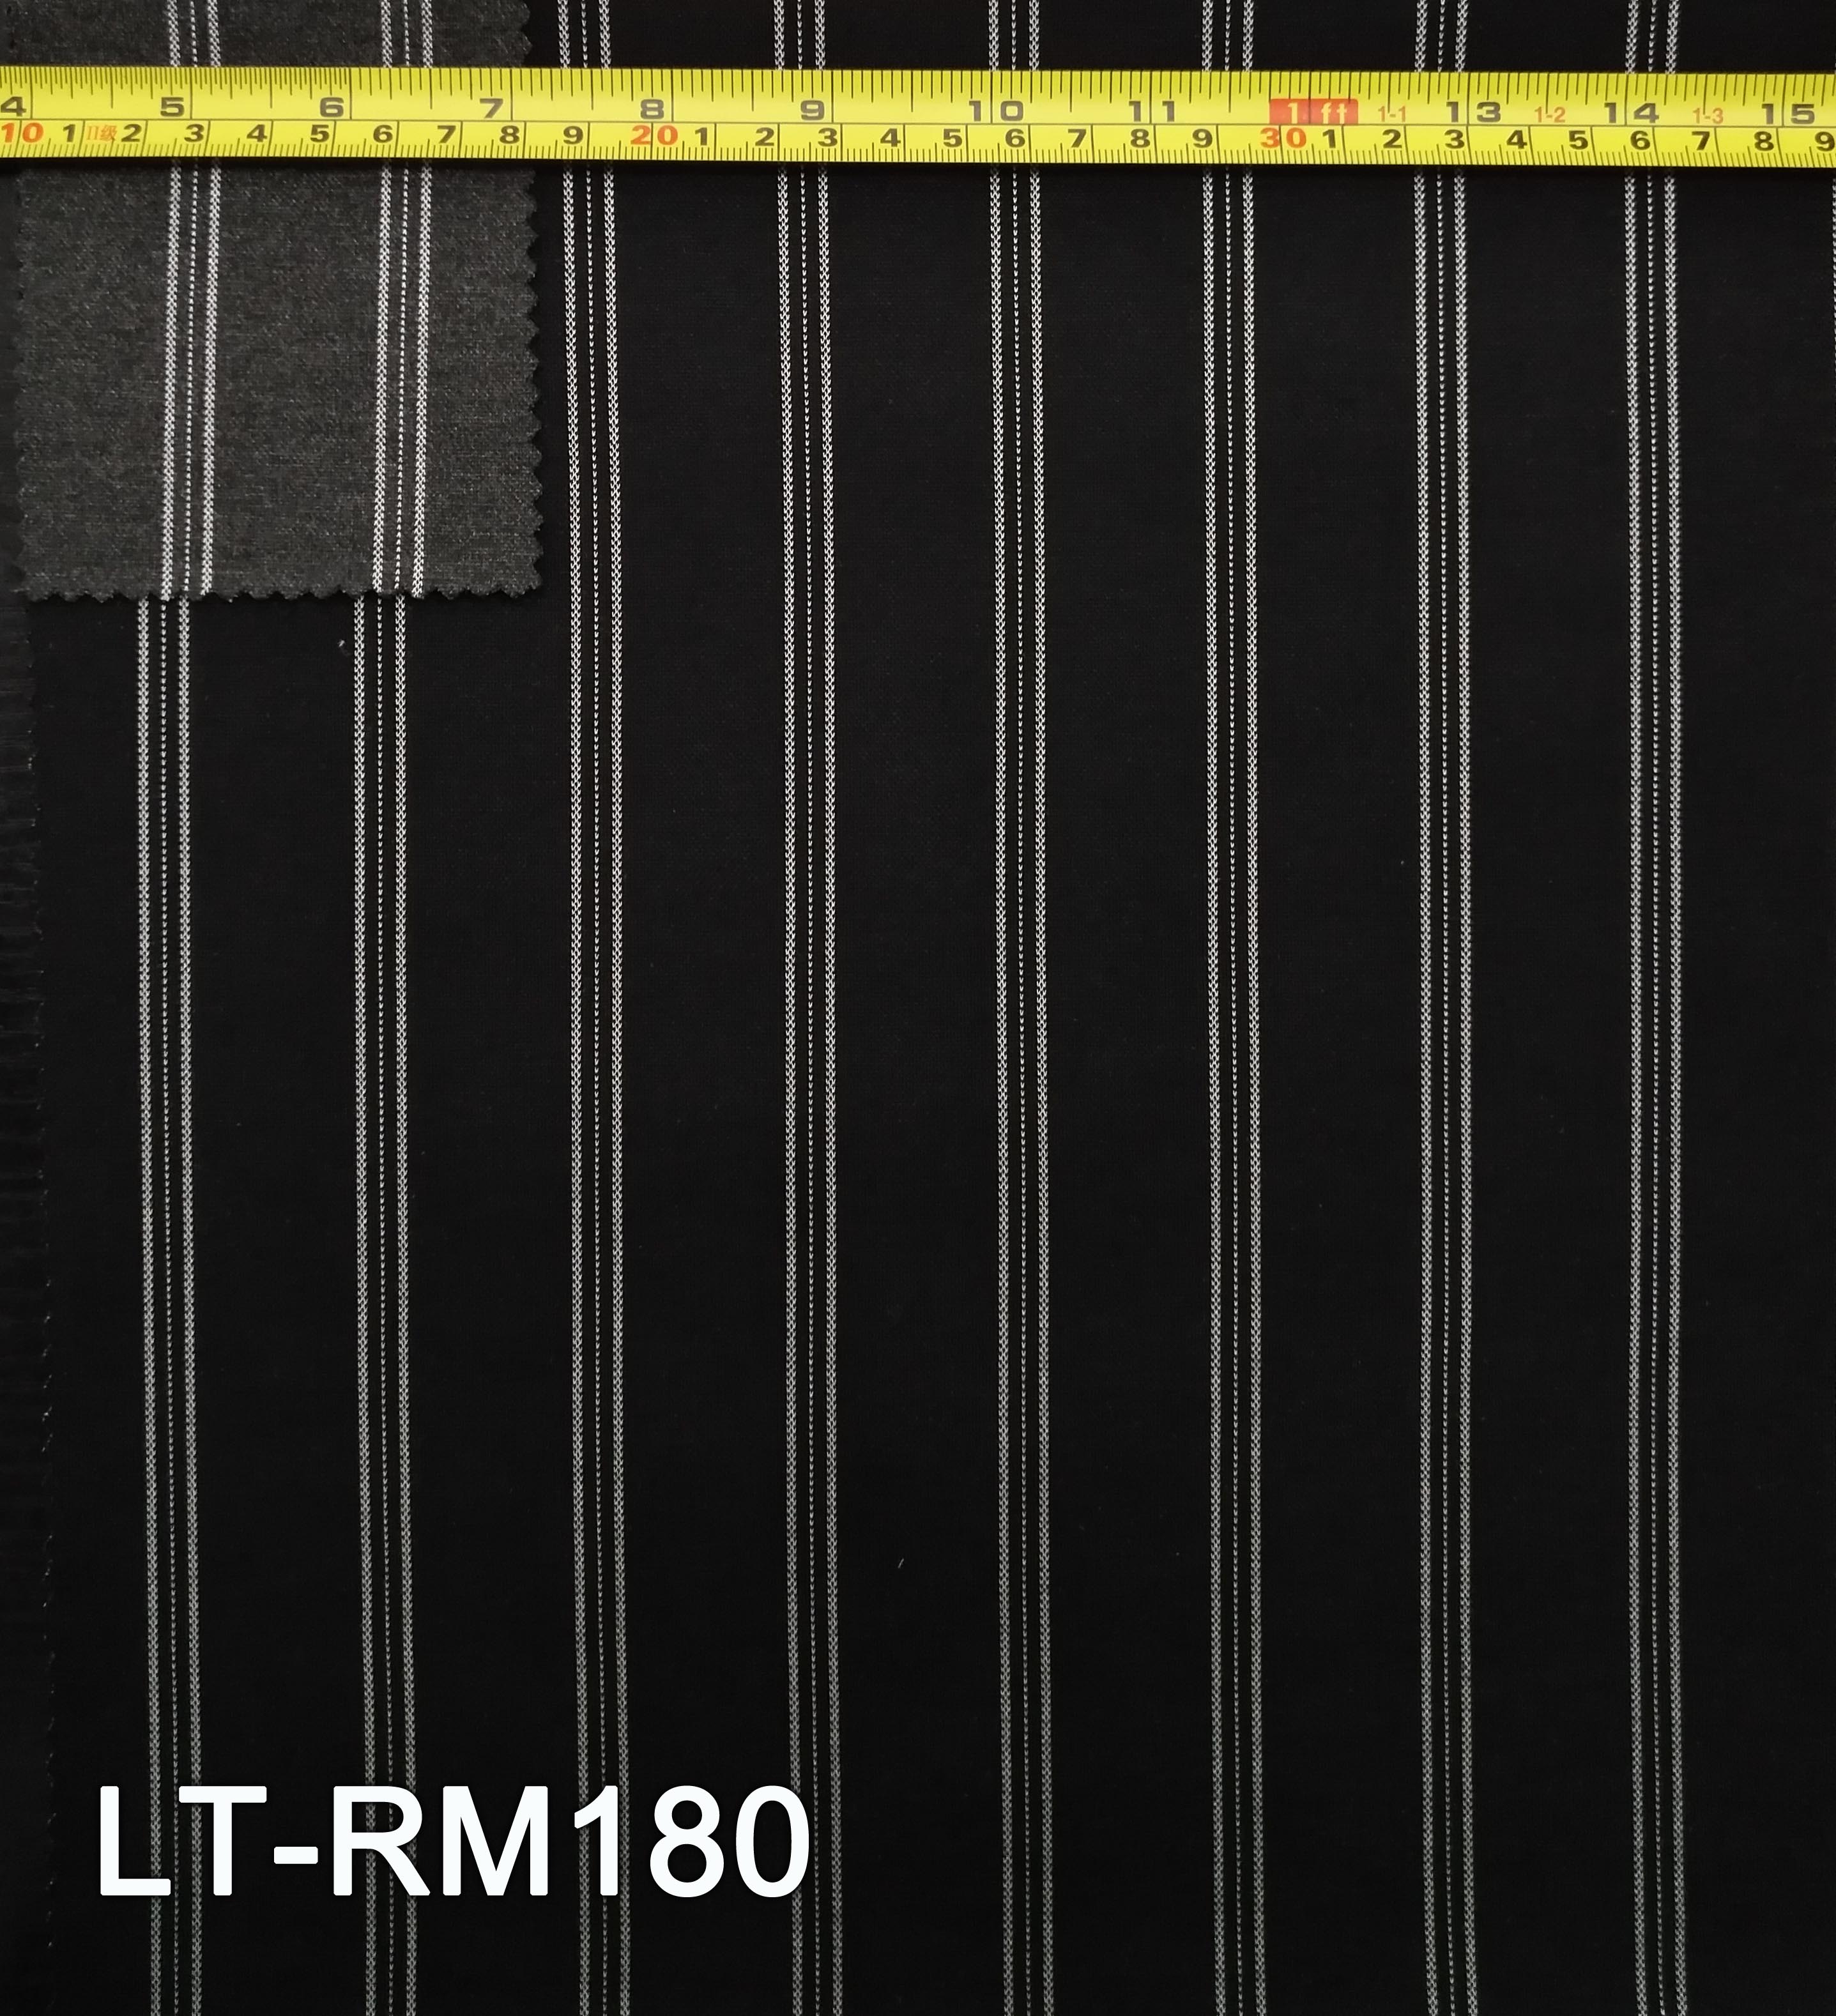 LT-RM180